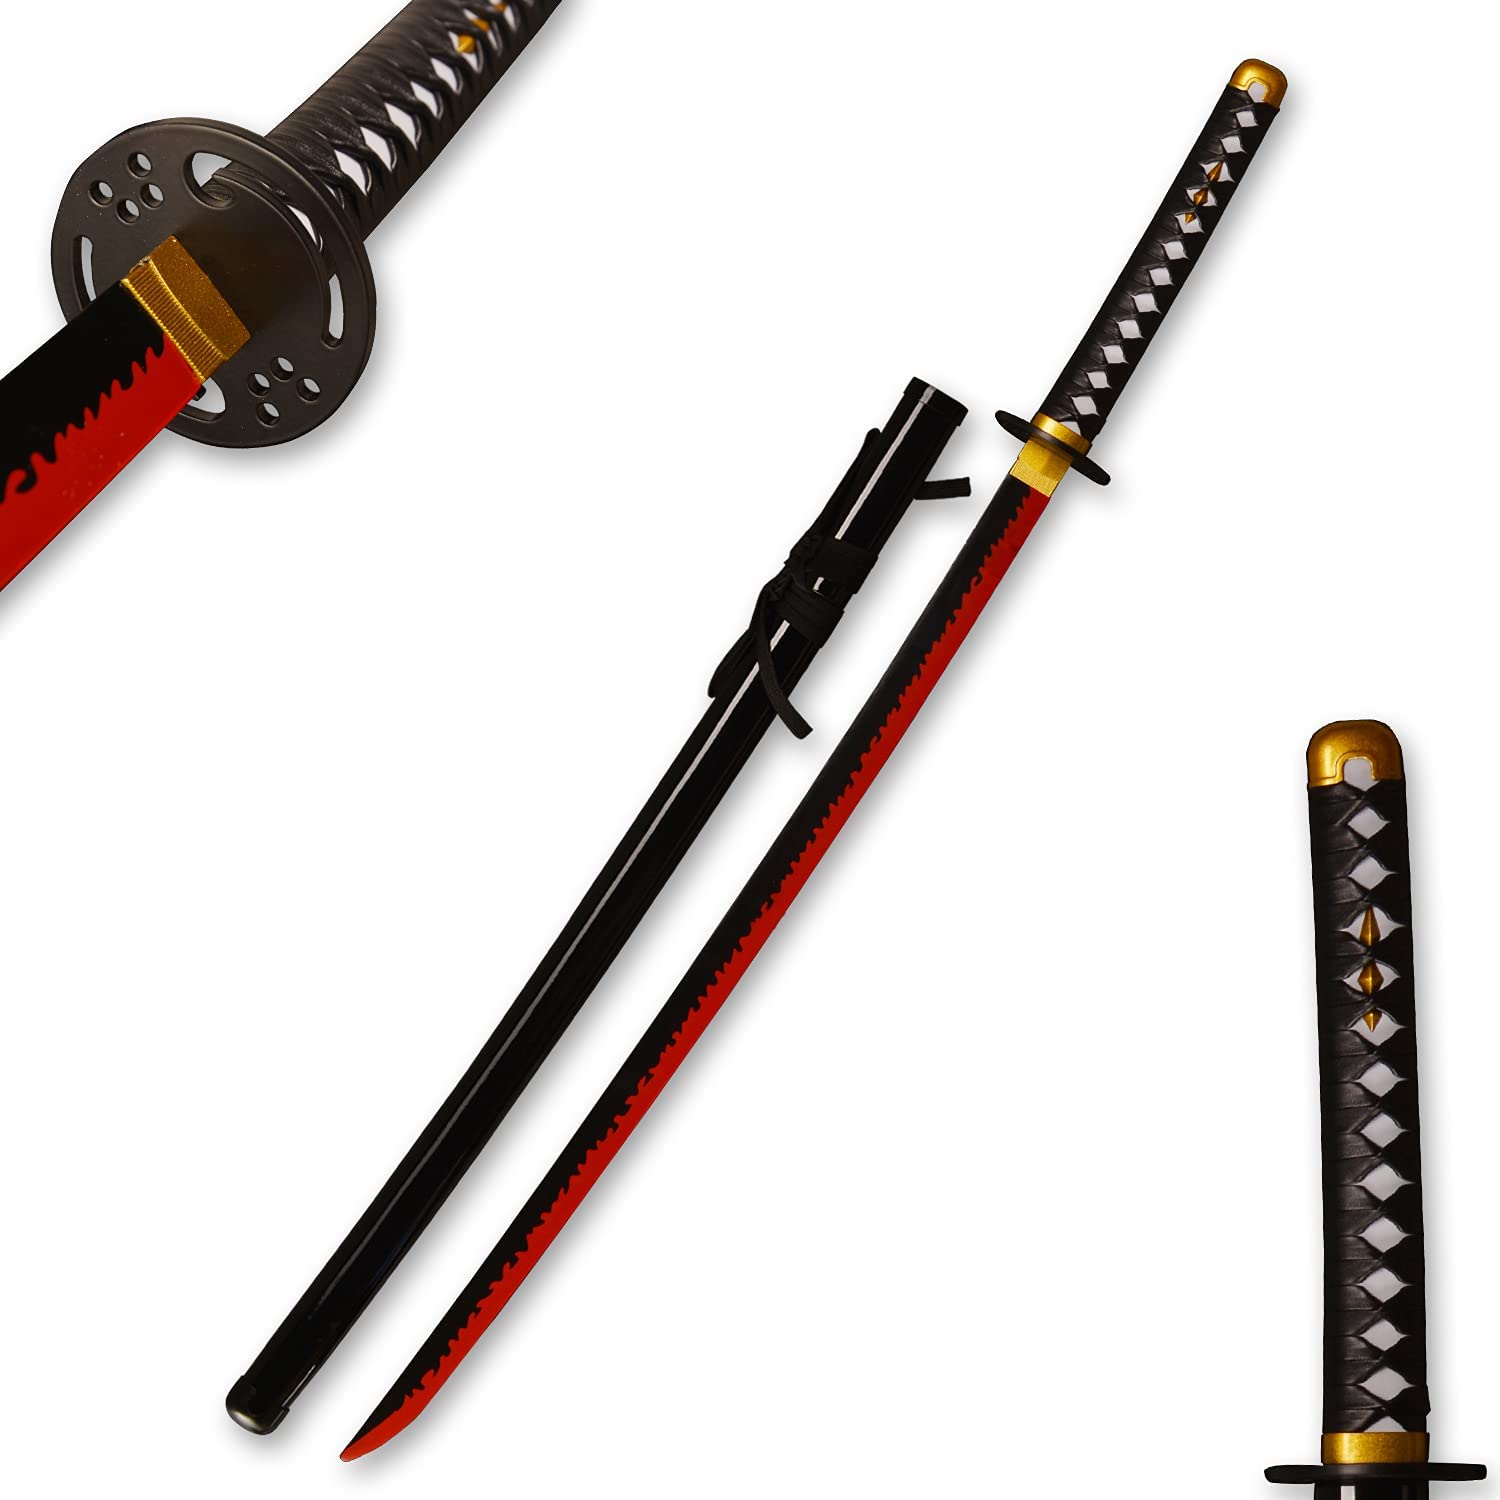 FGO Tsumukari Muramasa Sword of Senji Muramasa in Just $88